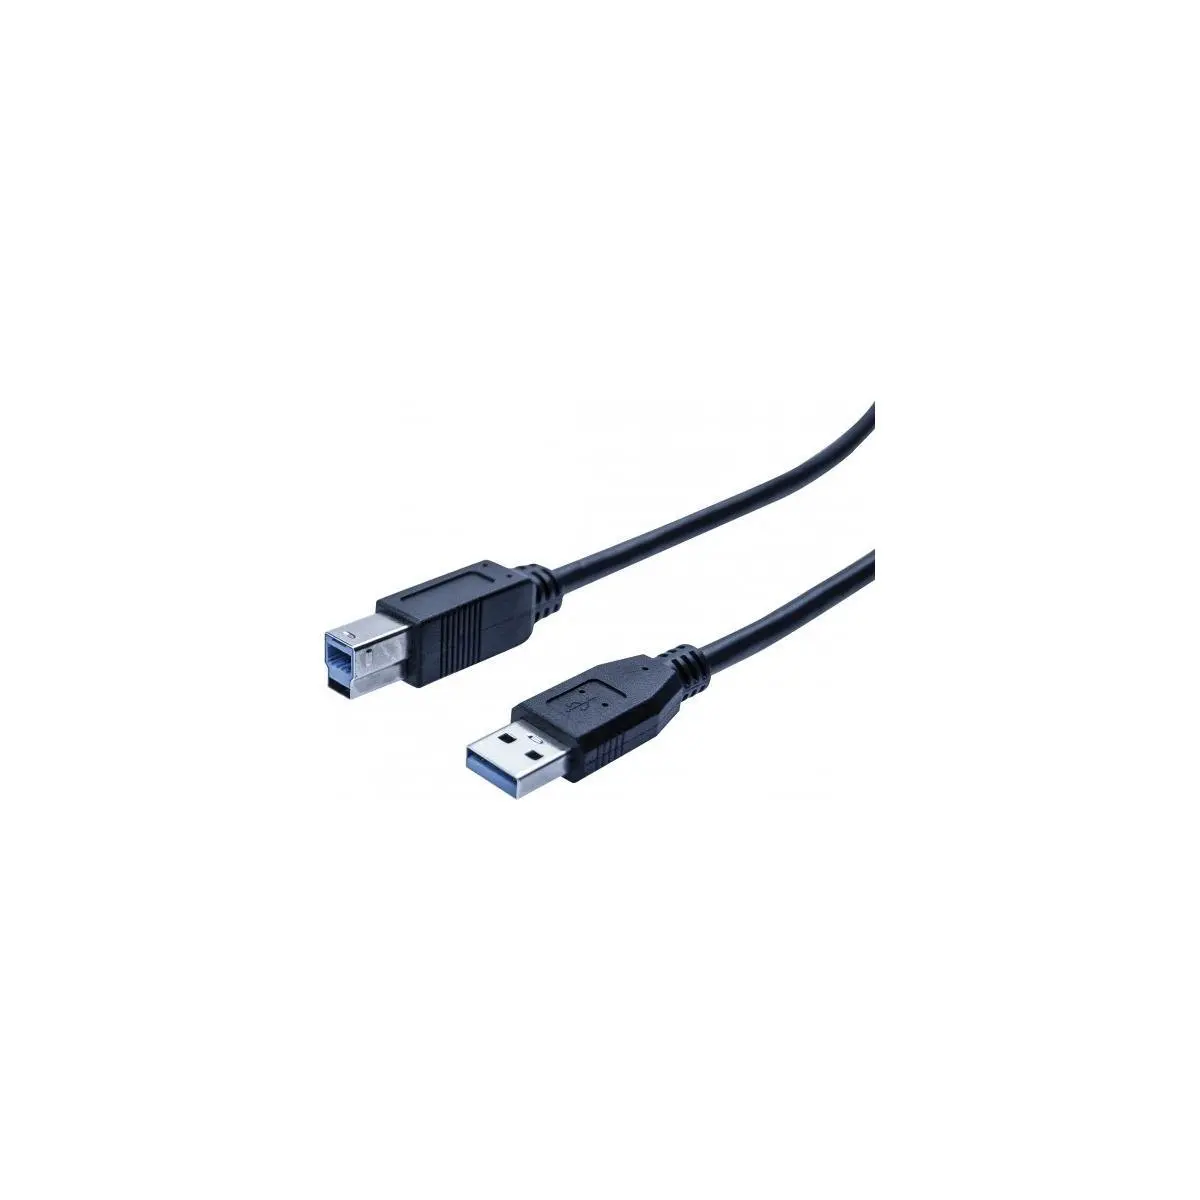 Cordon eco USB 3.0 type A / B noir - 0,5 m photo du produit